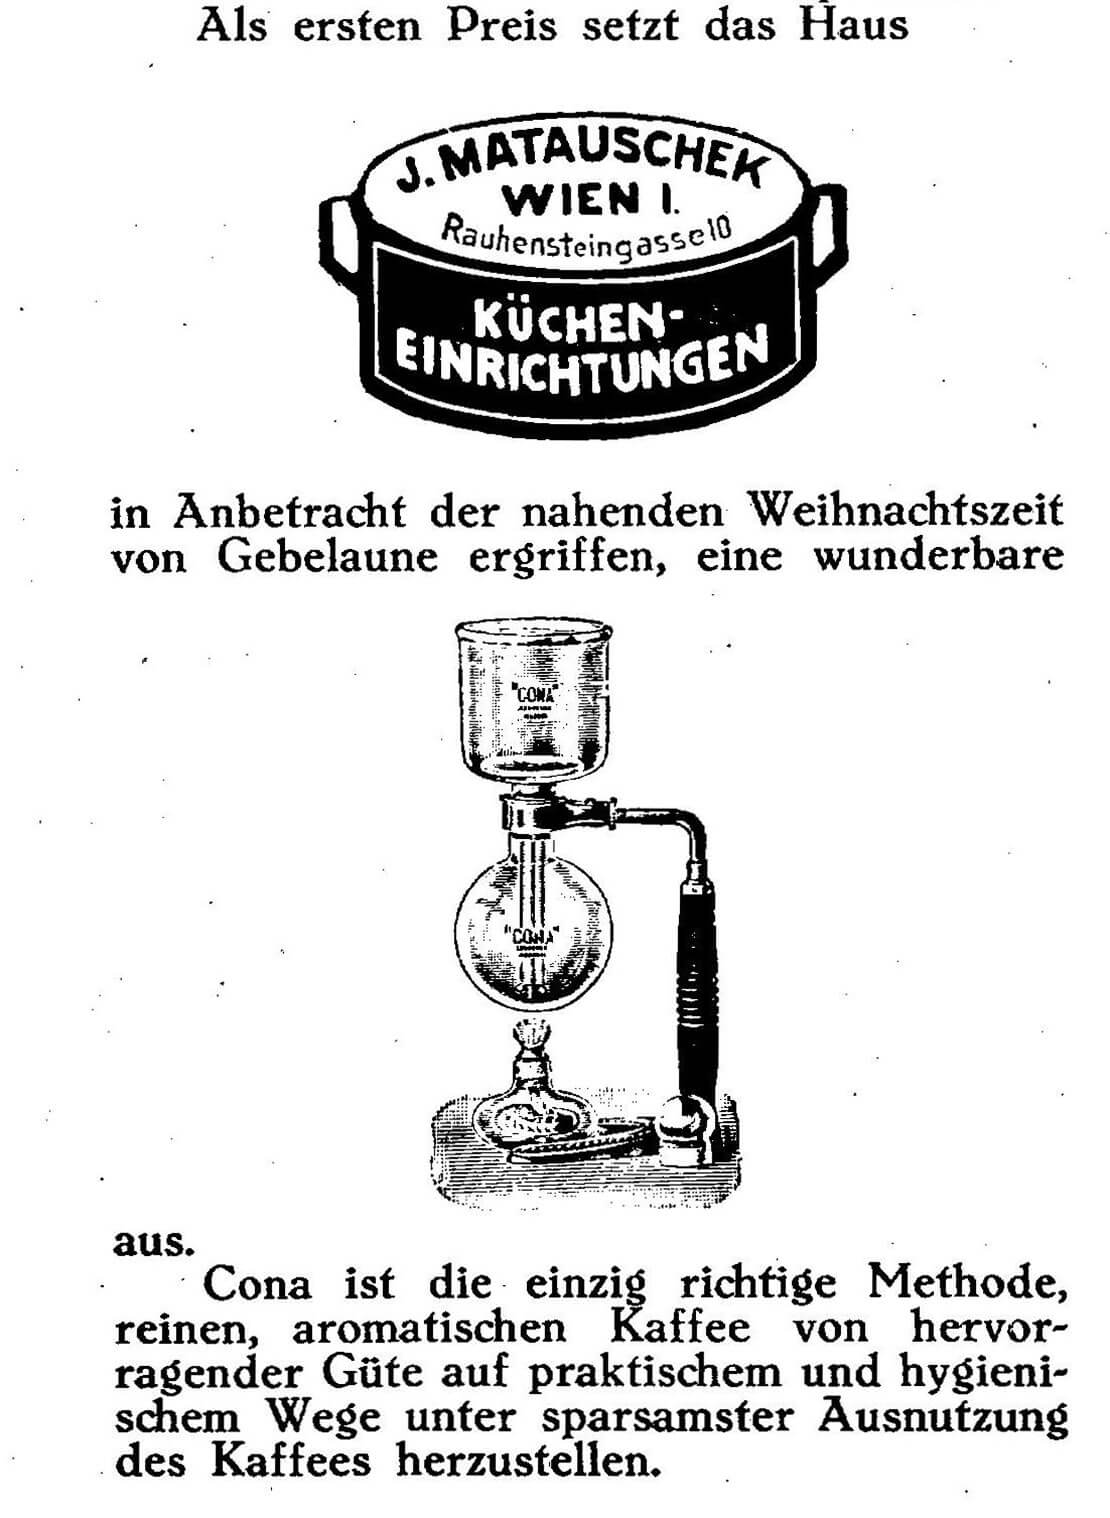 Cona-Kaffeemaschine und Reklame der Firma Josef Matauschek, in: Die moderne Frau, H. 23-24, 1927, ANNO/ÖNB 